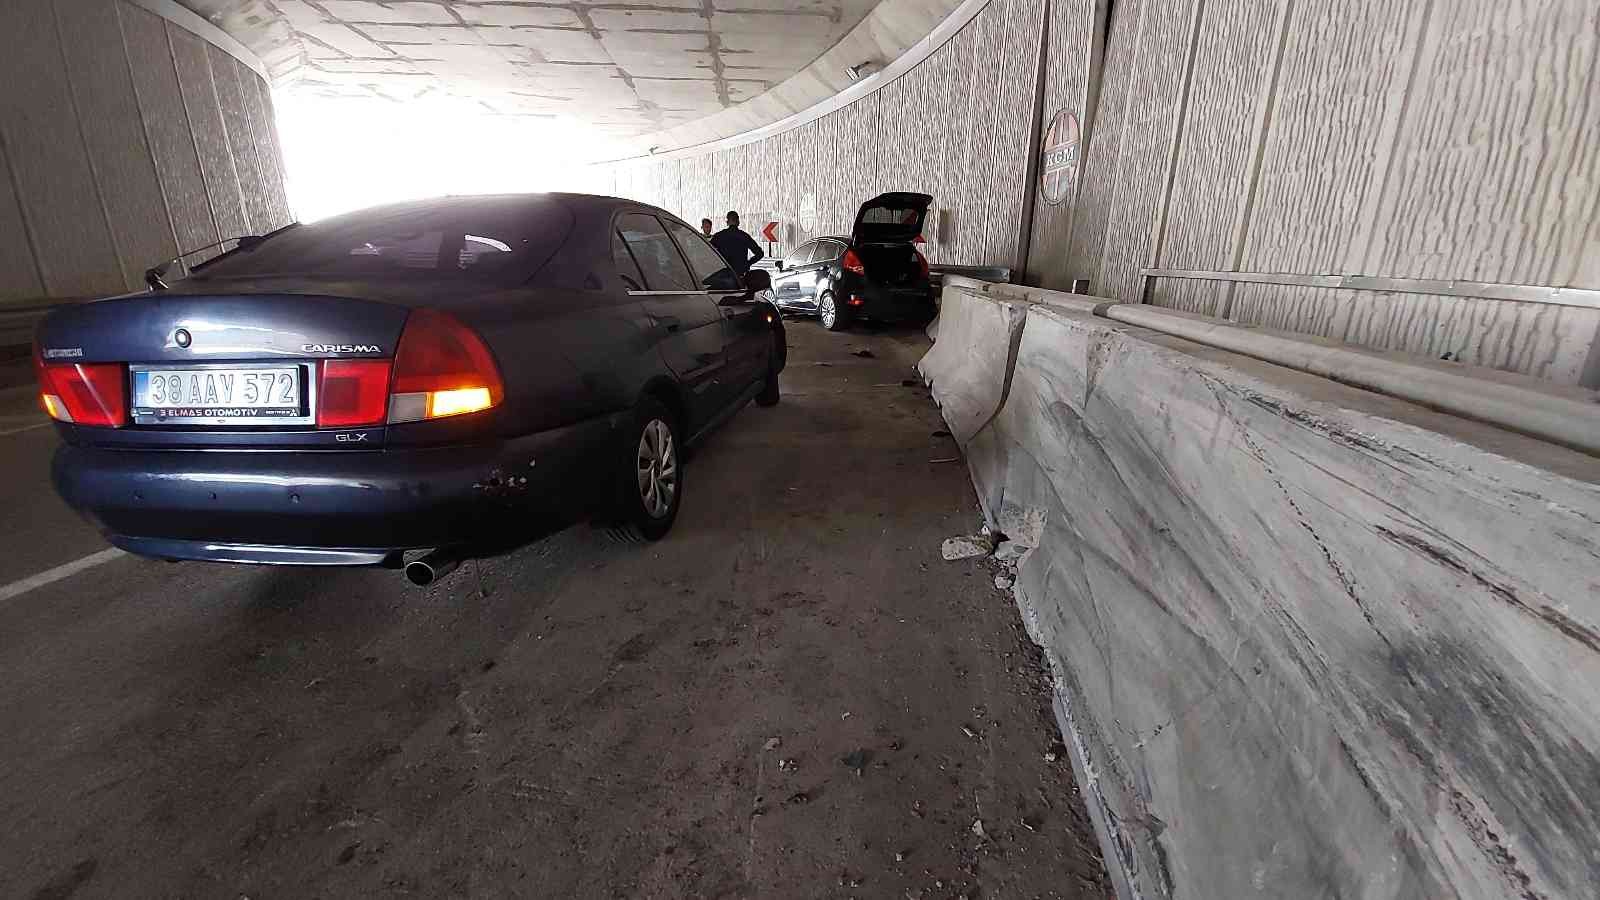 Samsun'da trafik kazası: 4 yaralı
